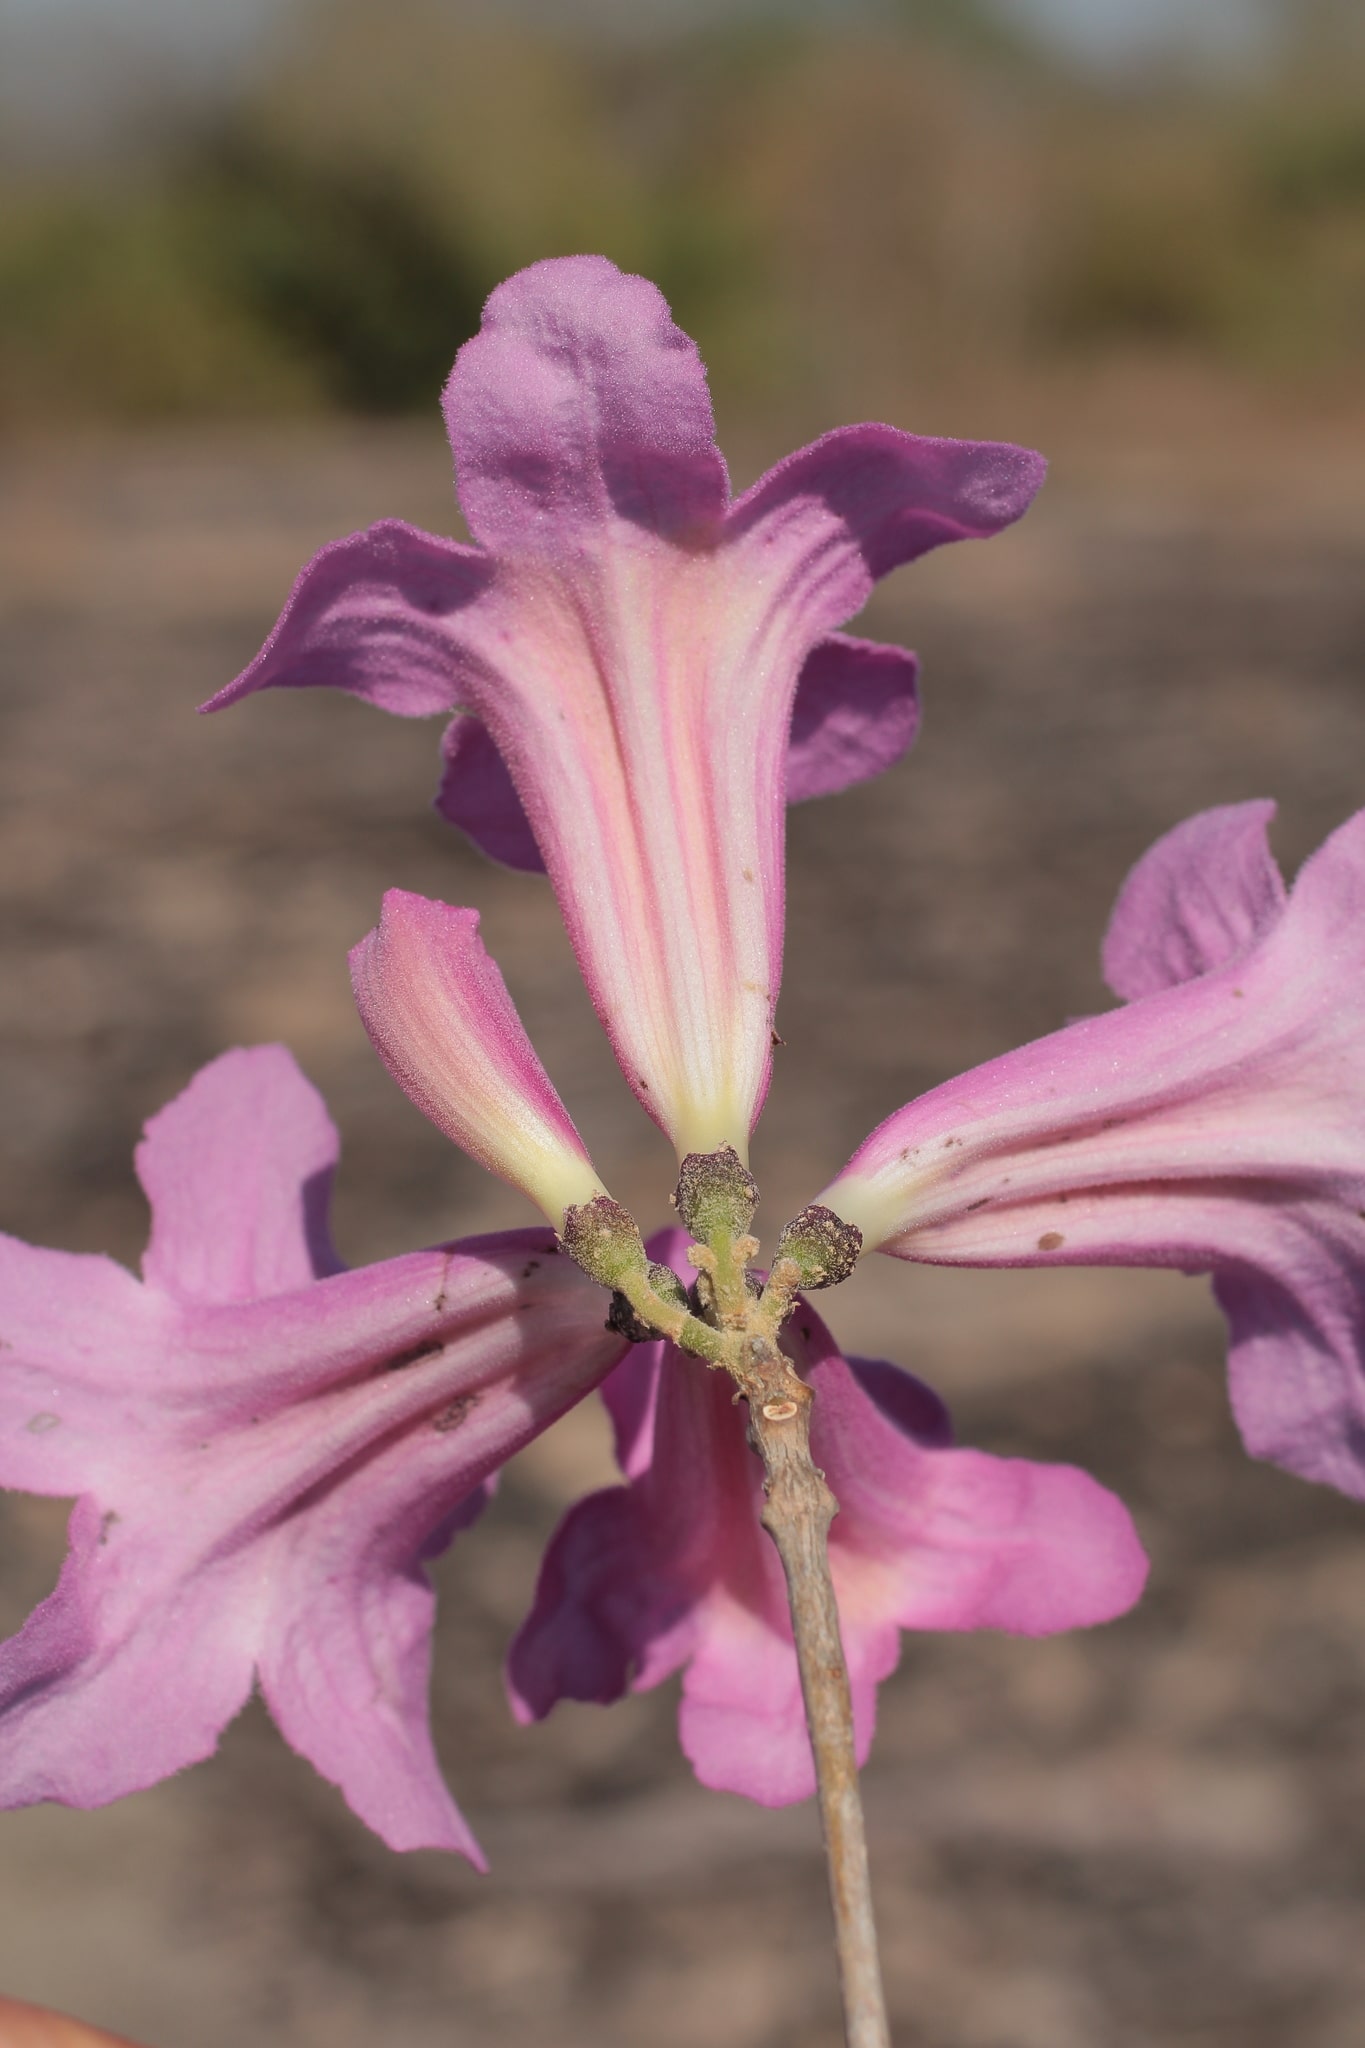 Handroanthus abayoy, especie recientemente descrita, forma parte de la riqueza botánica del sitio BOLTIPA006
©Germaine A. Parada.